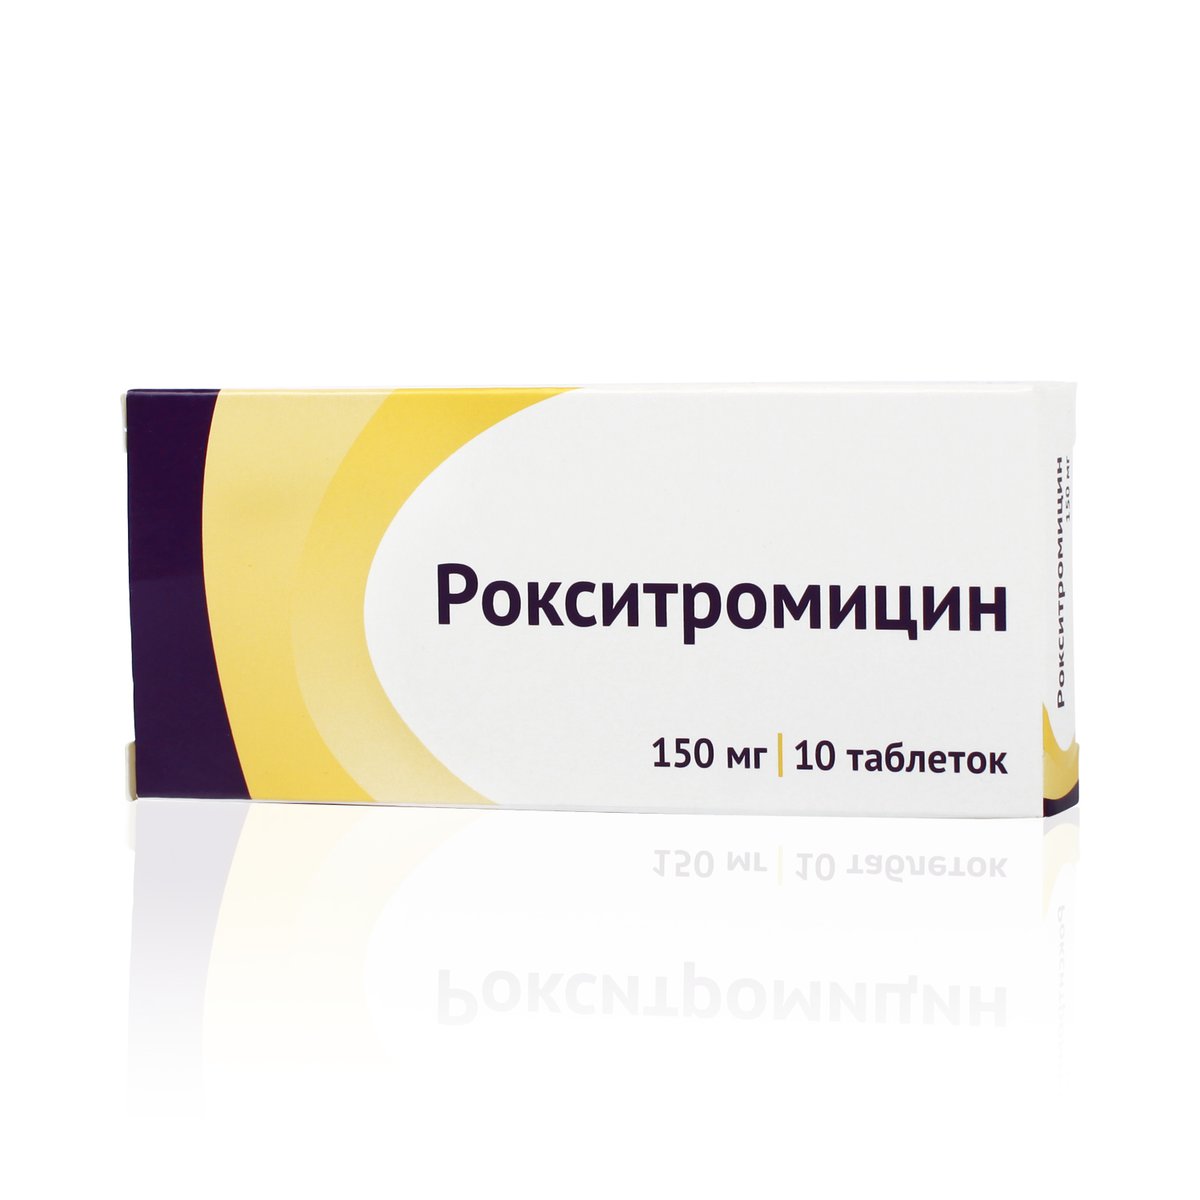 Рокситромицин озон (таблетки, 10 шт, 150 мг) - цена,  онлайн в .